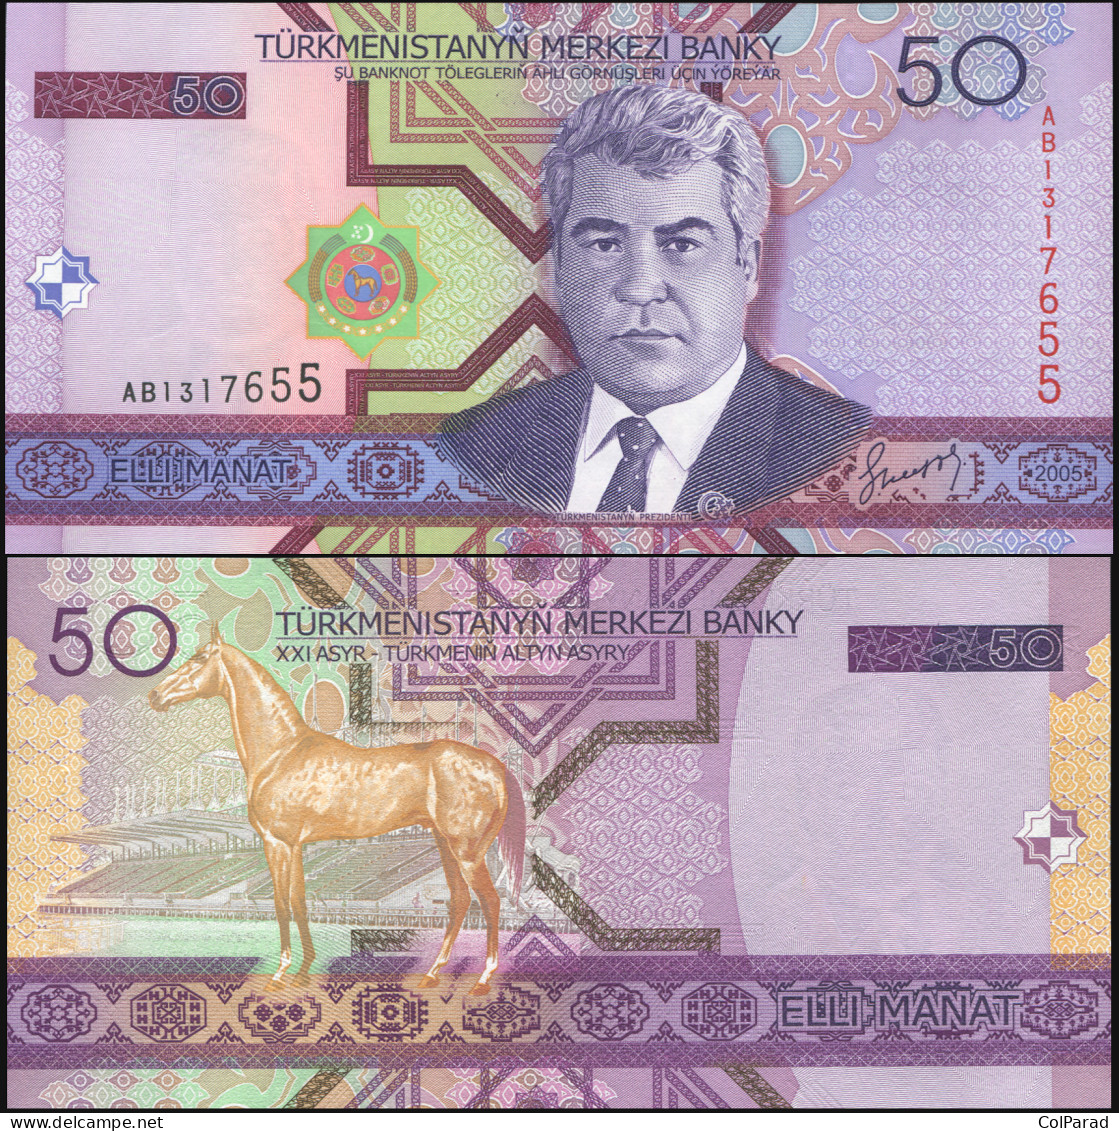 TURKMENISTAN 50 MANAT - 2005 - Unc - P.17a Paper Banknote - Turkménistan